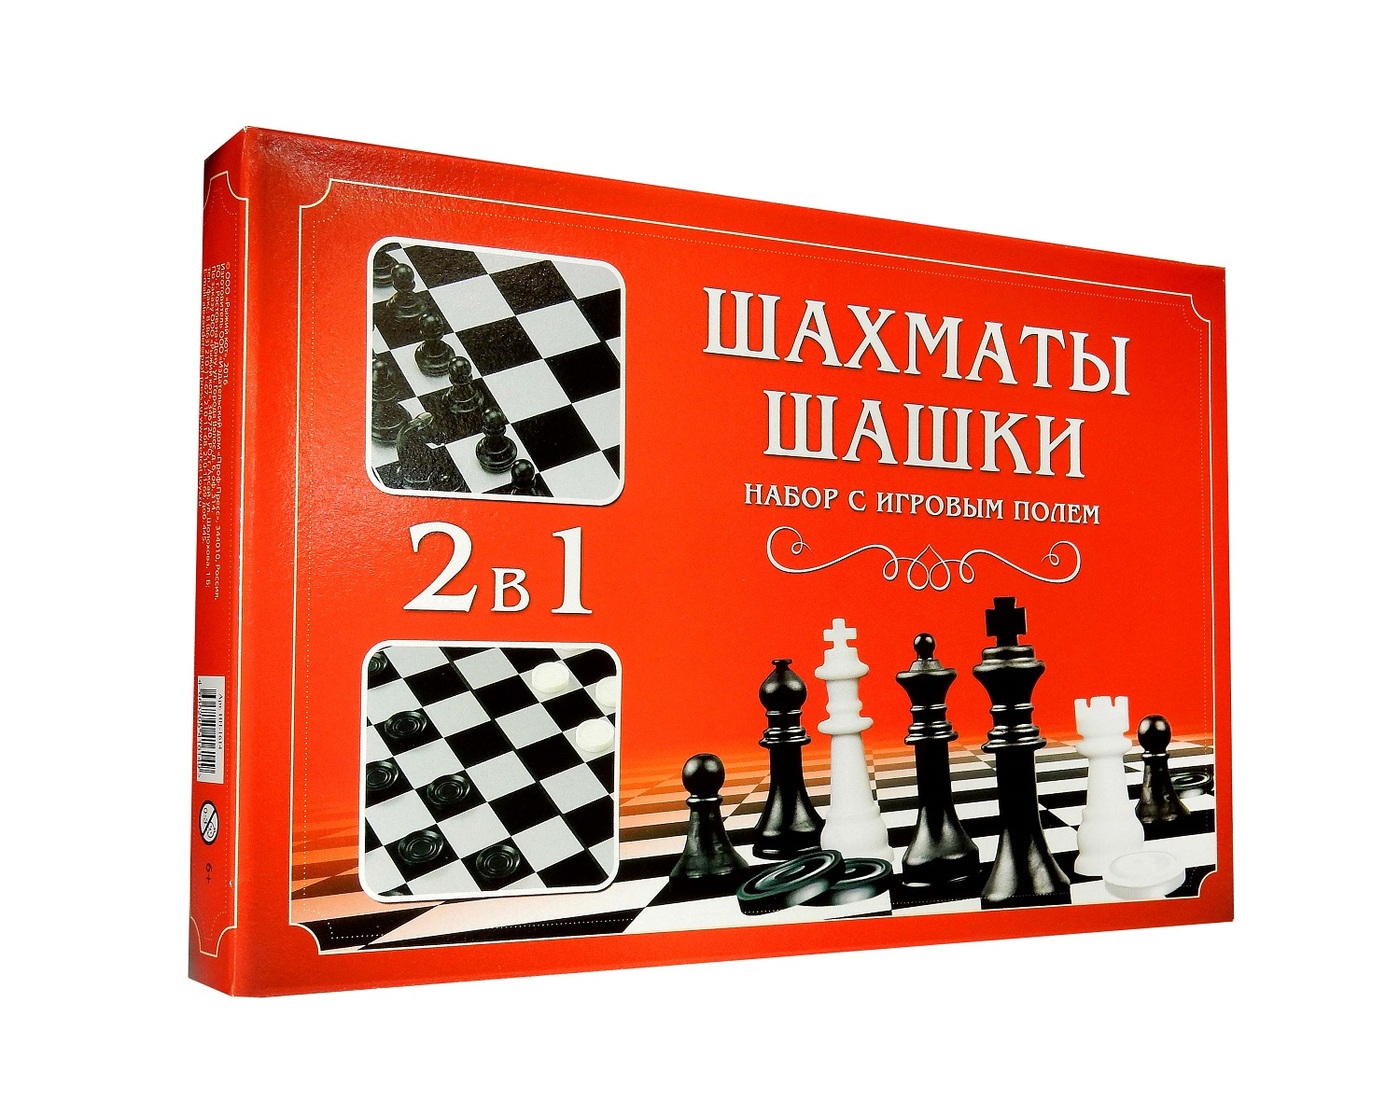 Шахматы том 1. Шашки-шахматы 2в1 оловянные. Рыжий кот 2в1 шашки шахматы 236640. Шахматы и шашки 2 в 1. Набор шахматы шашки рыжий кот.